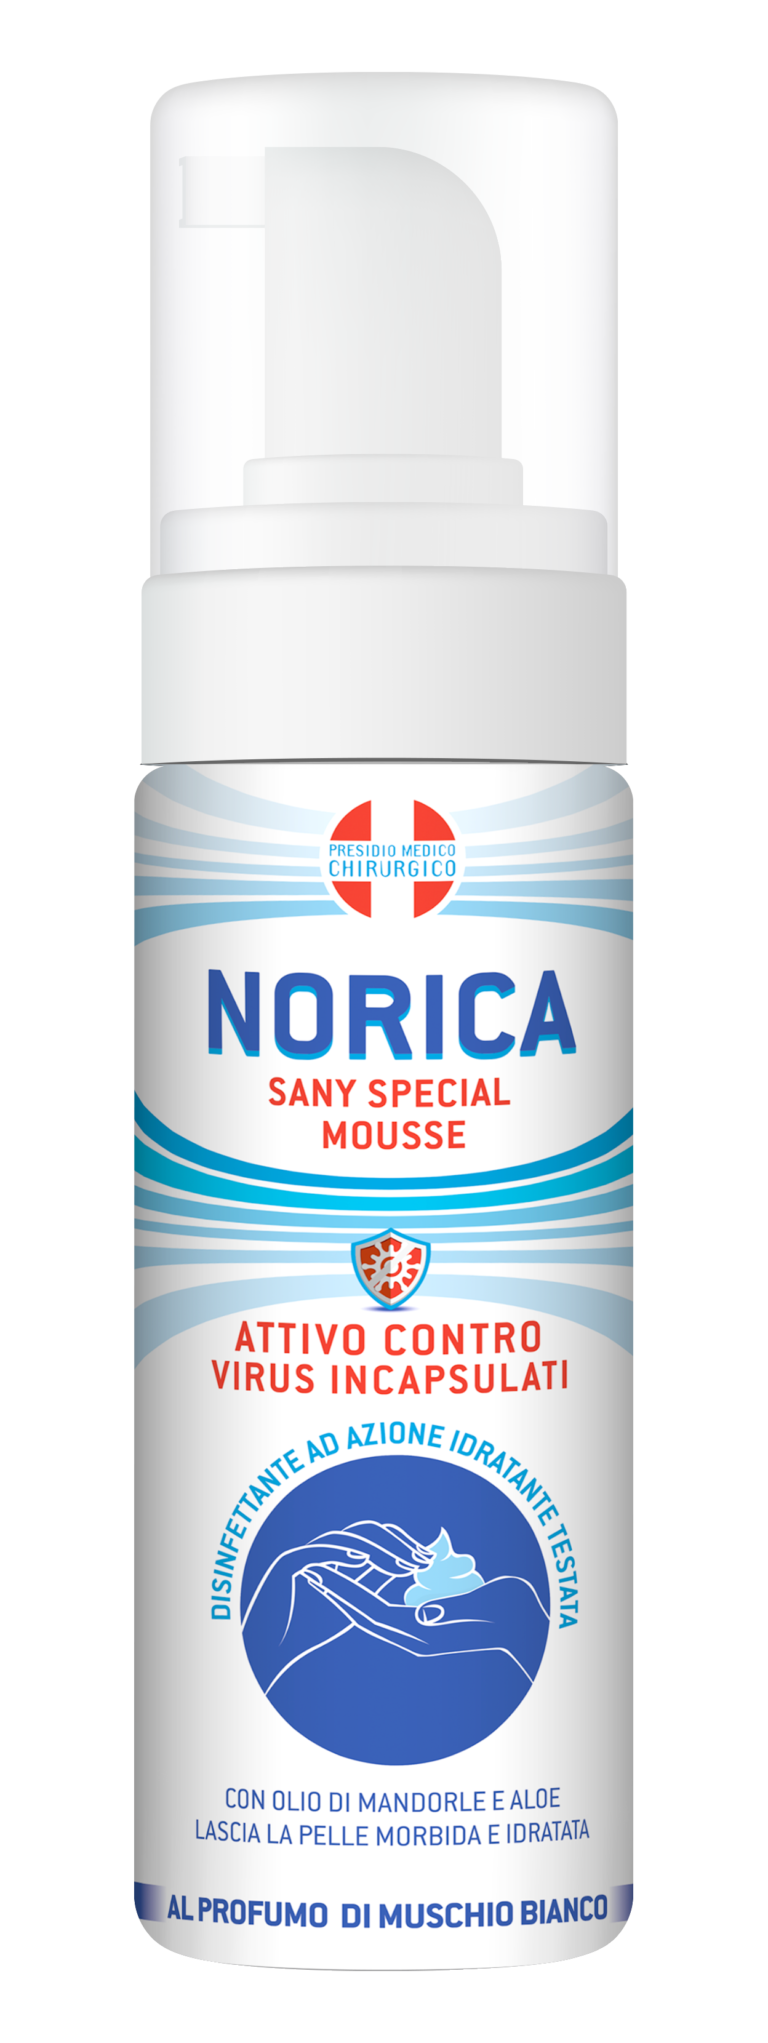 Norica Protezione Completa spray disinfettante per oggetti e superfici  300ml